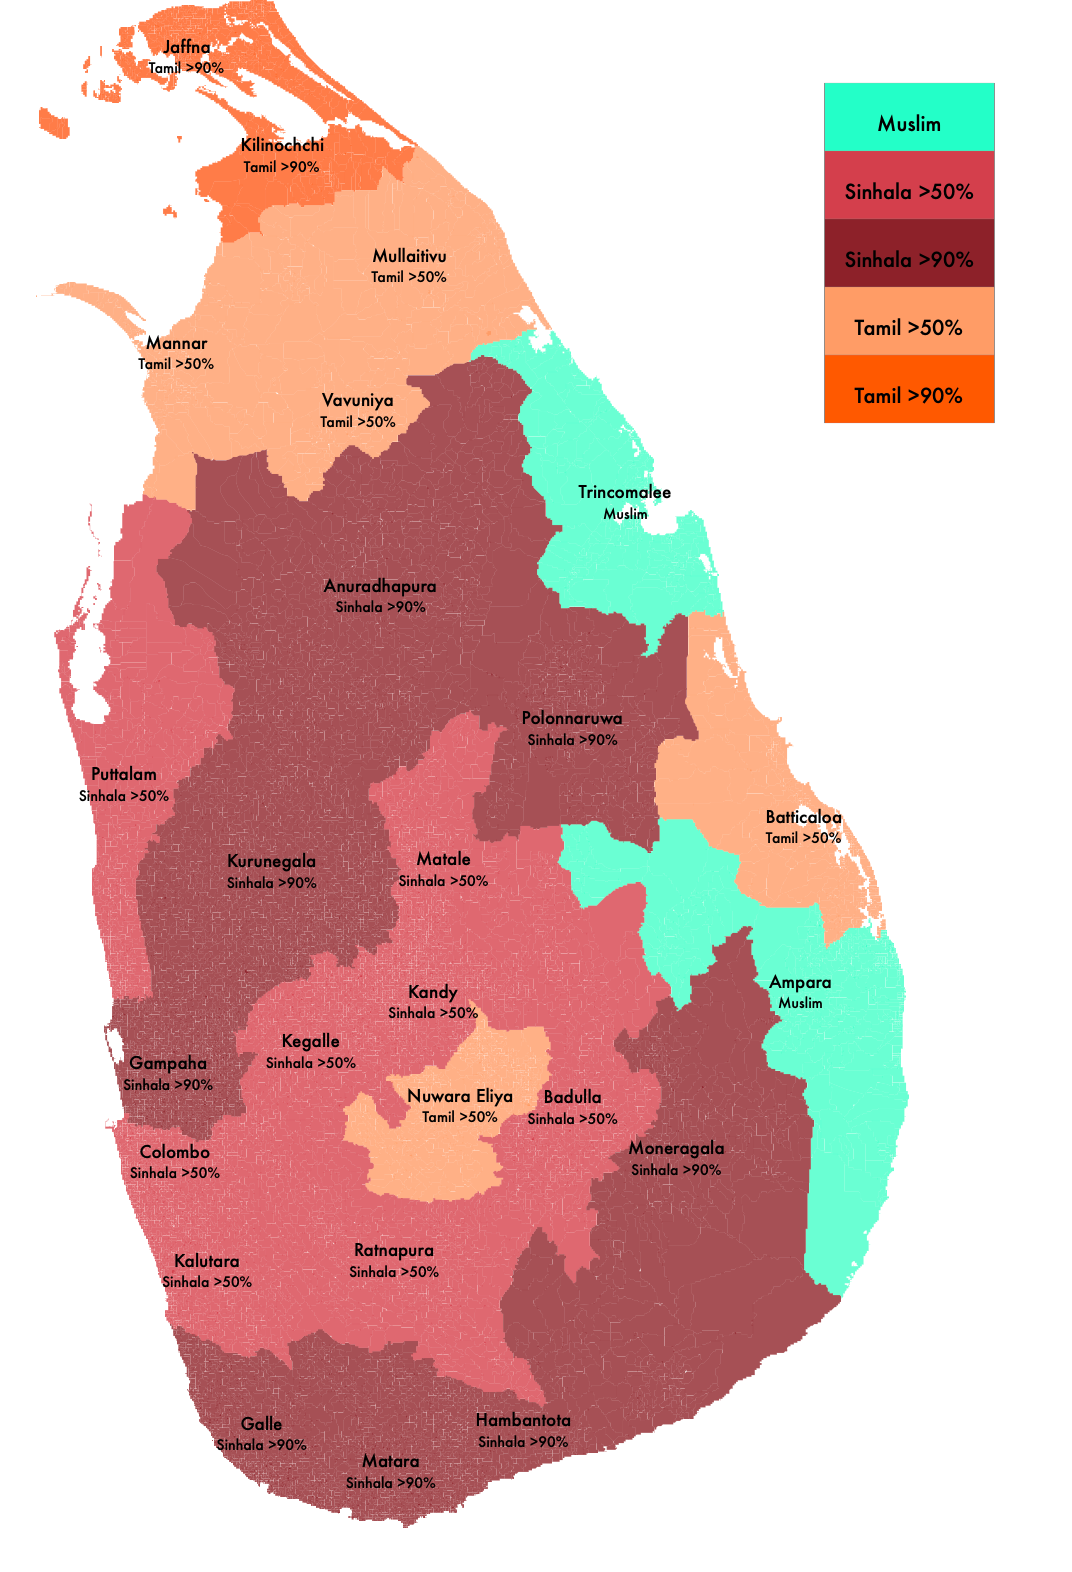 Multi-Ethnic Sri Lanka. Some Visualizations, by Nuwan I. Senaratna, On  Politics